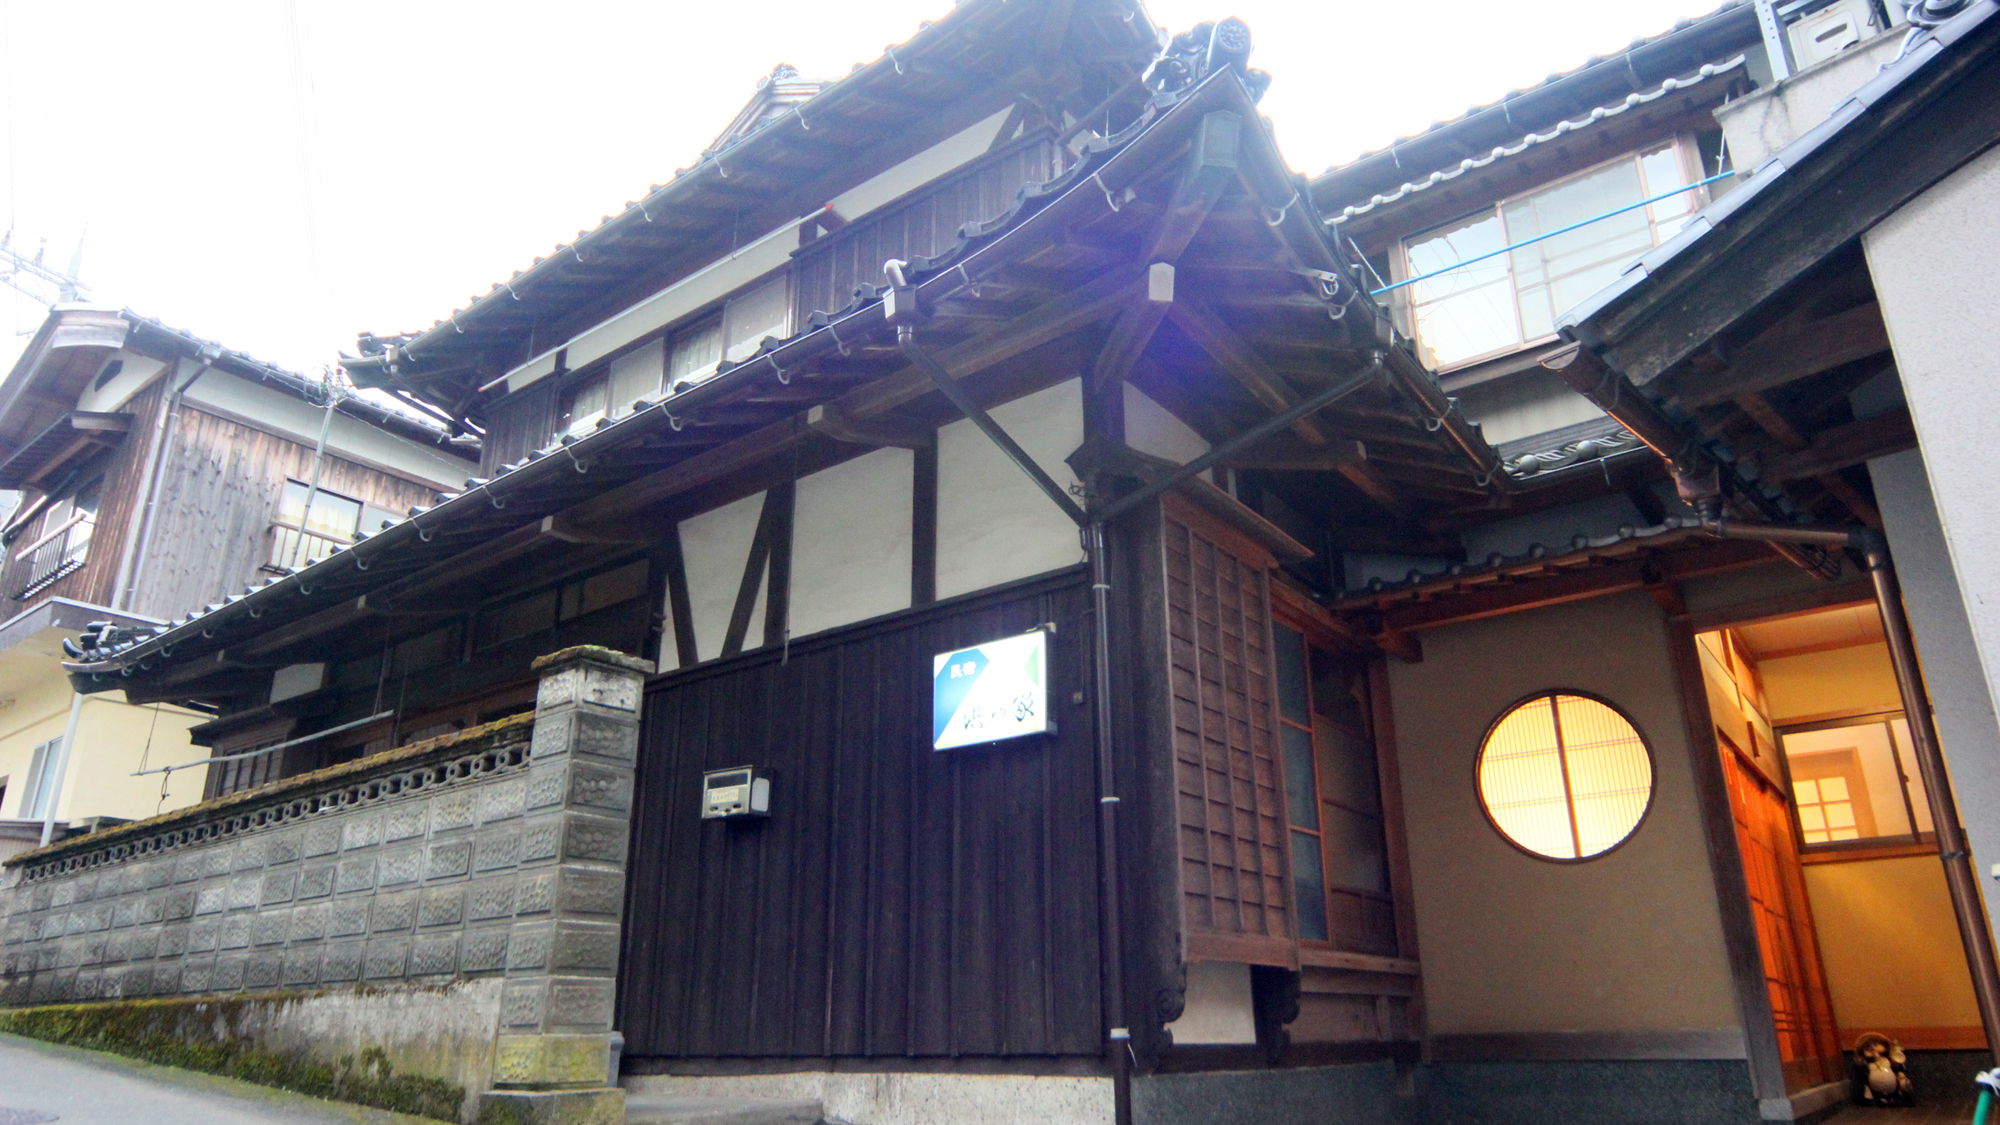 Fisherman's Guesthouse Hamanoya